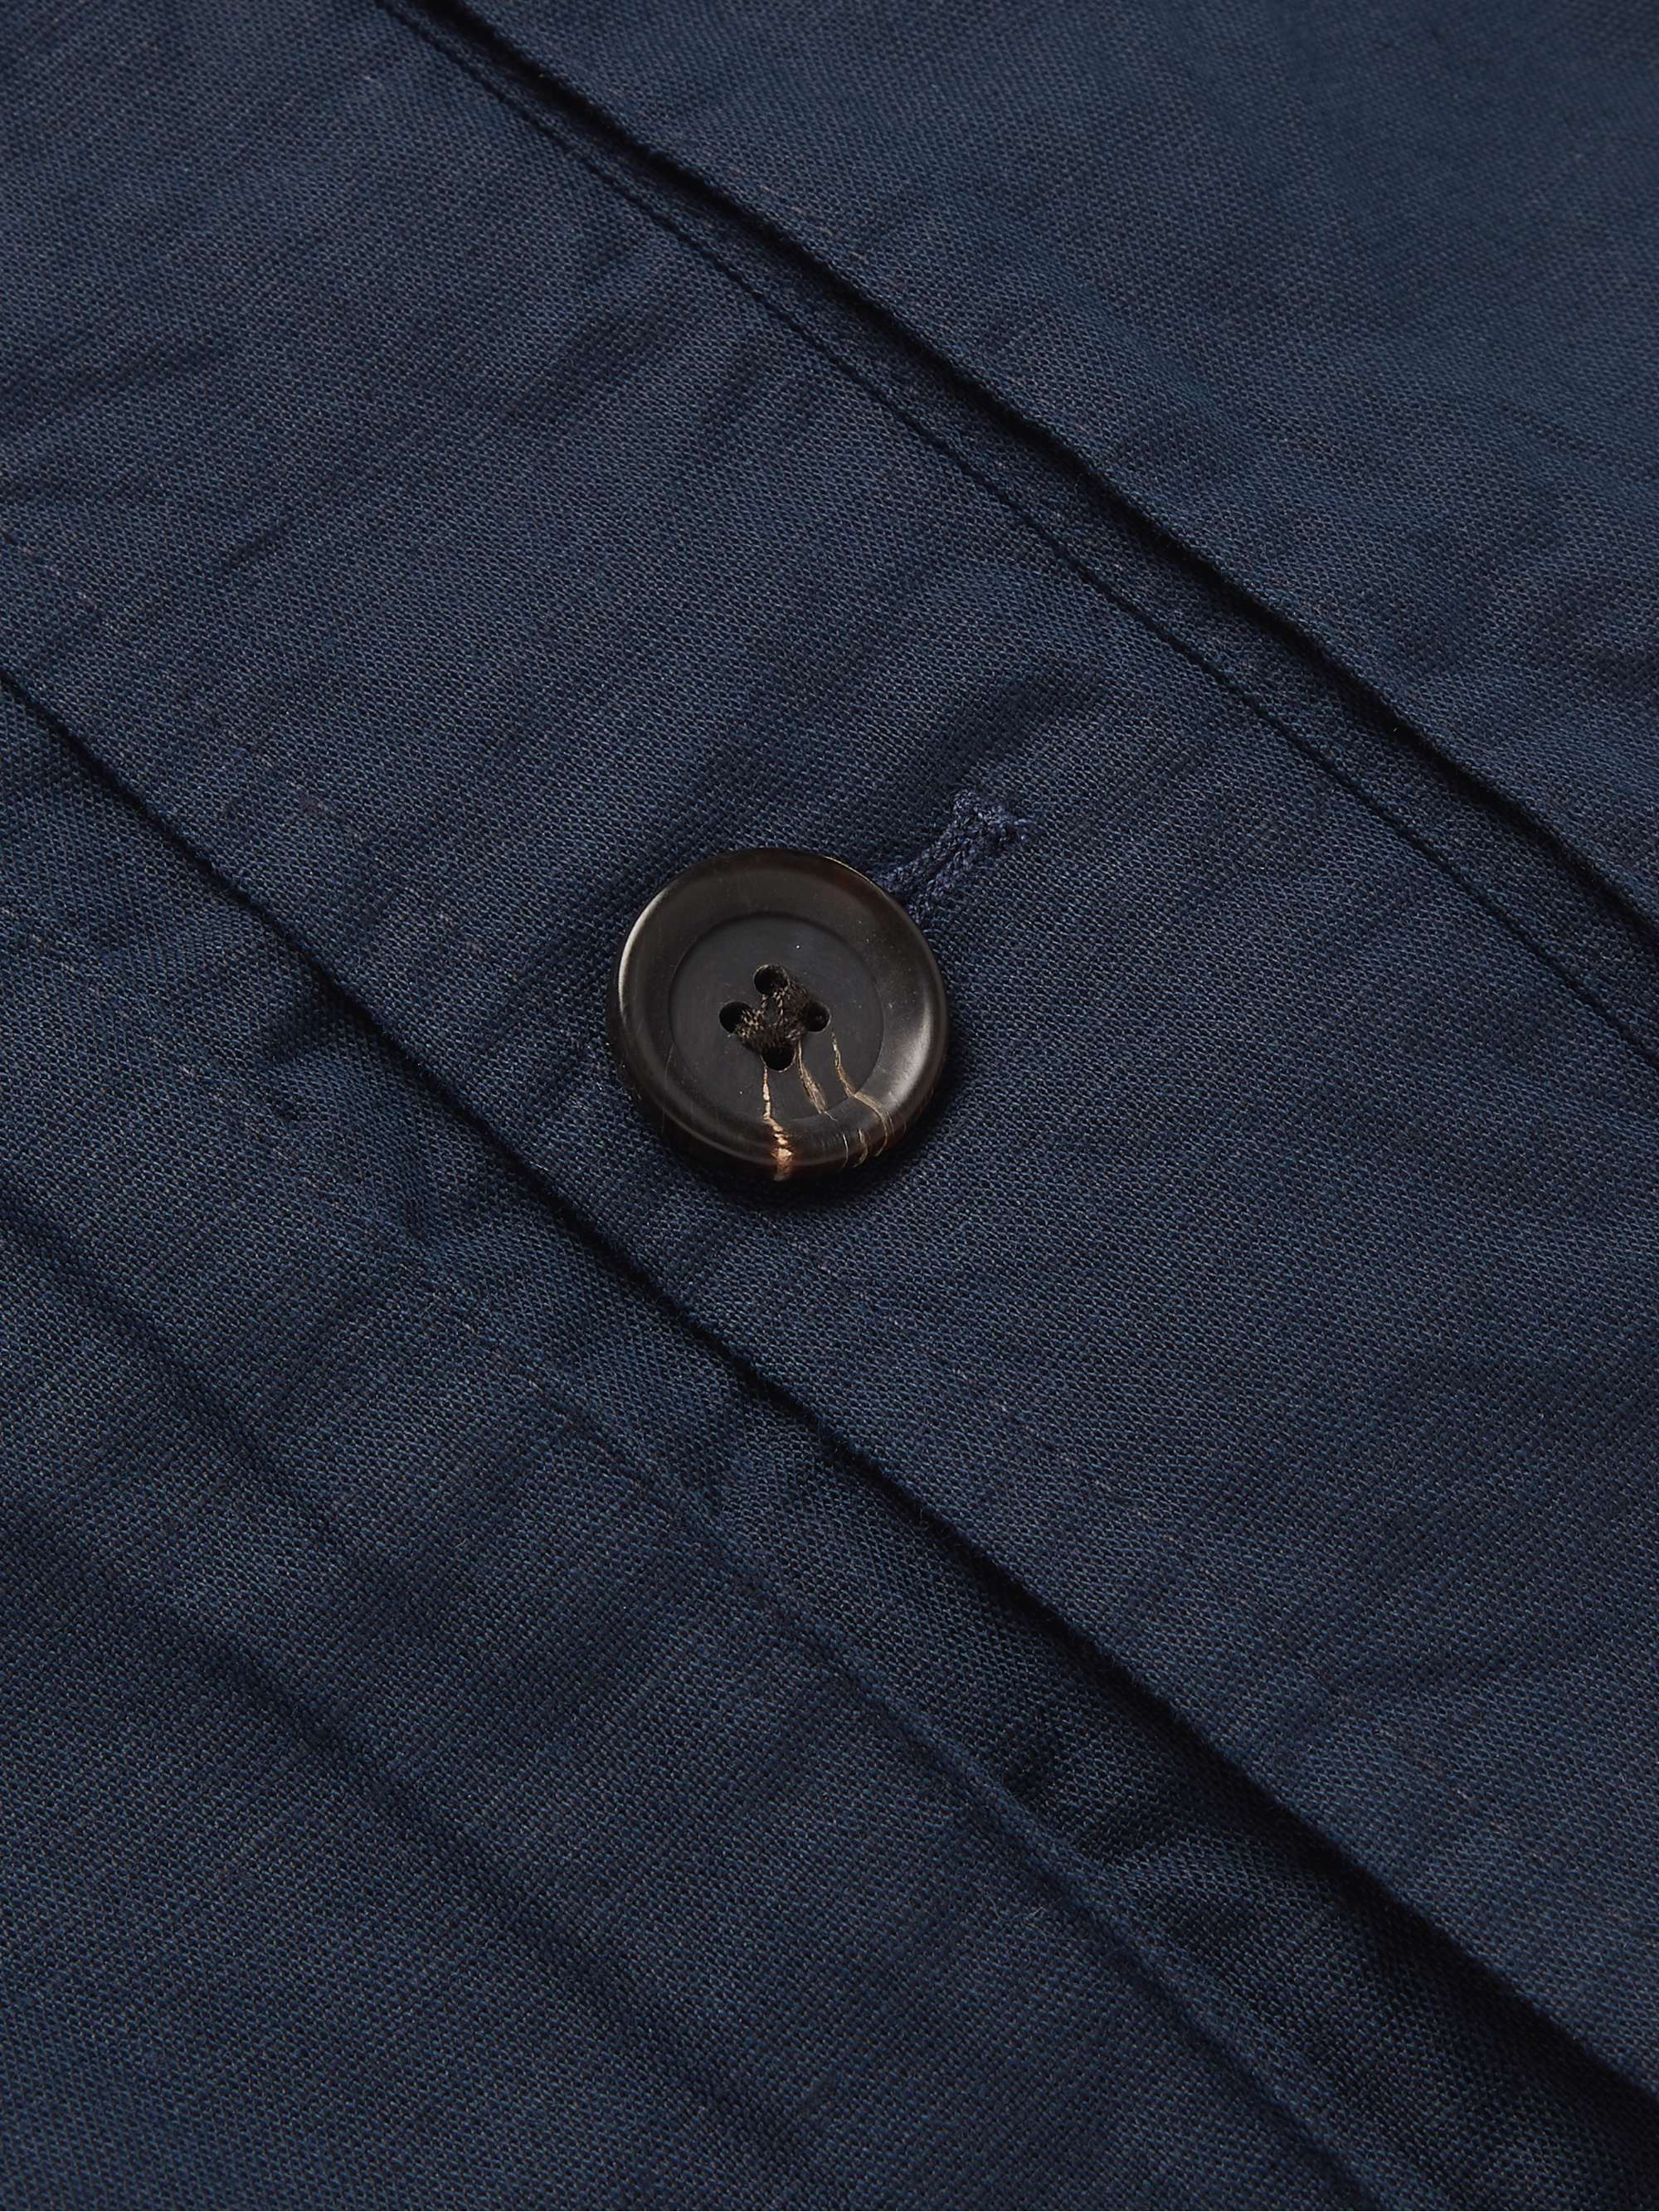 OLIVER SPENCER Stanford Linen and Cotton-Blend Blouson Jacket